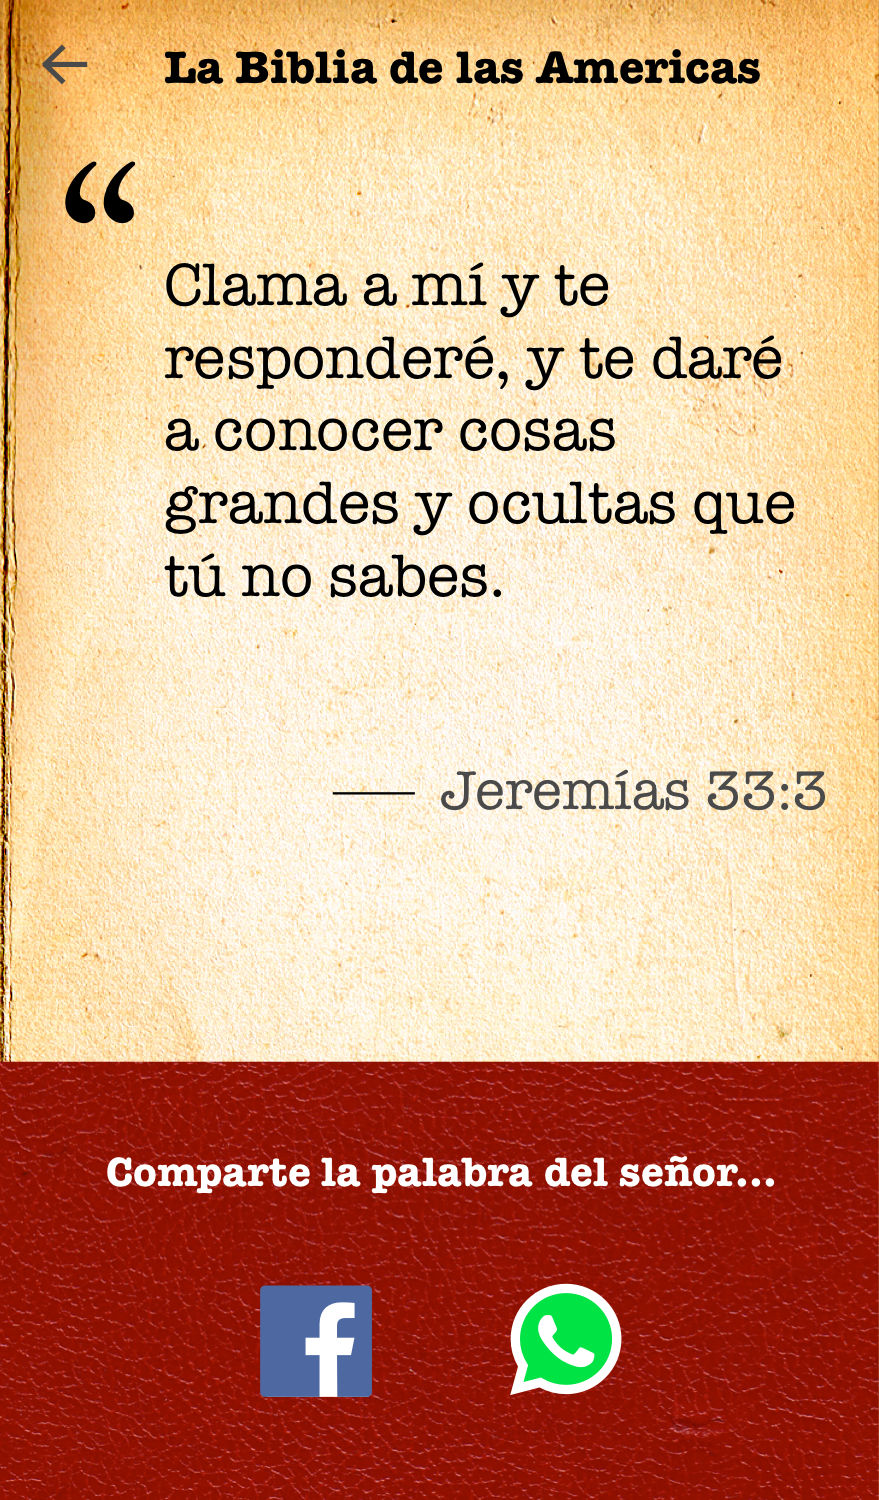 Android application La Biblia De las Americas screenshort